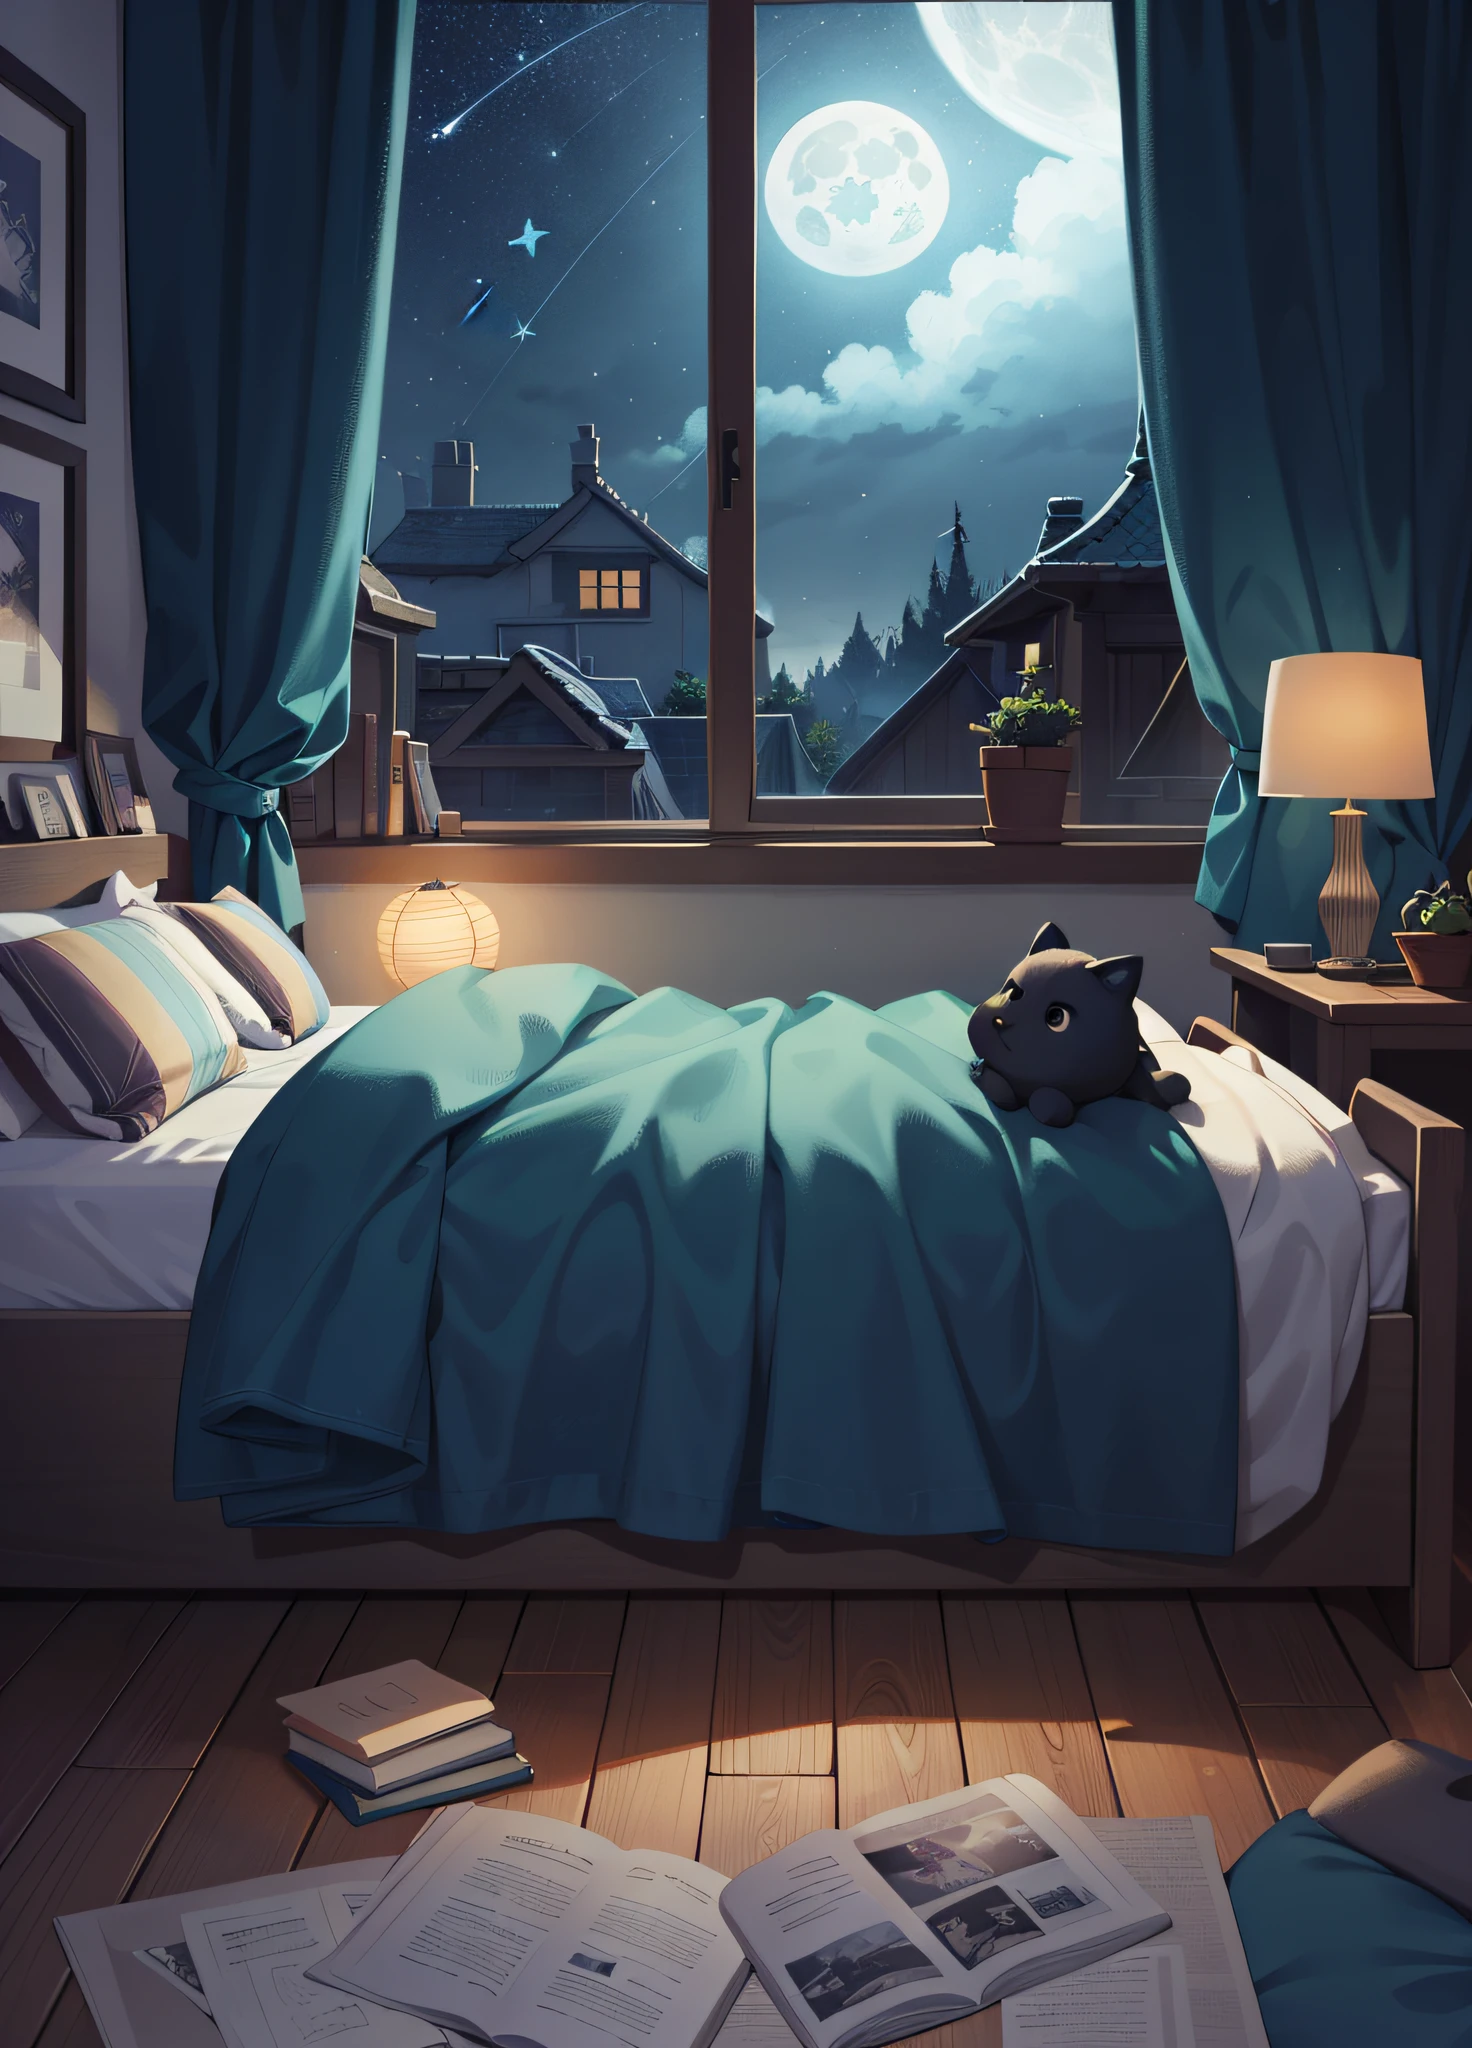 A bedroom window with 夜空, 満月と空の星のイラスト (イラスト 8k), (最高品質) (複雑なディテール) (8k) (夜空)